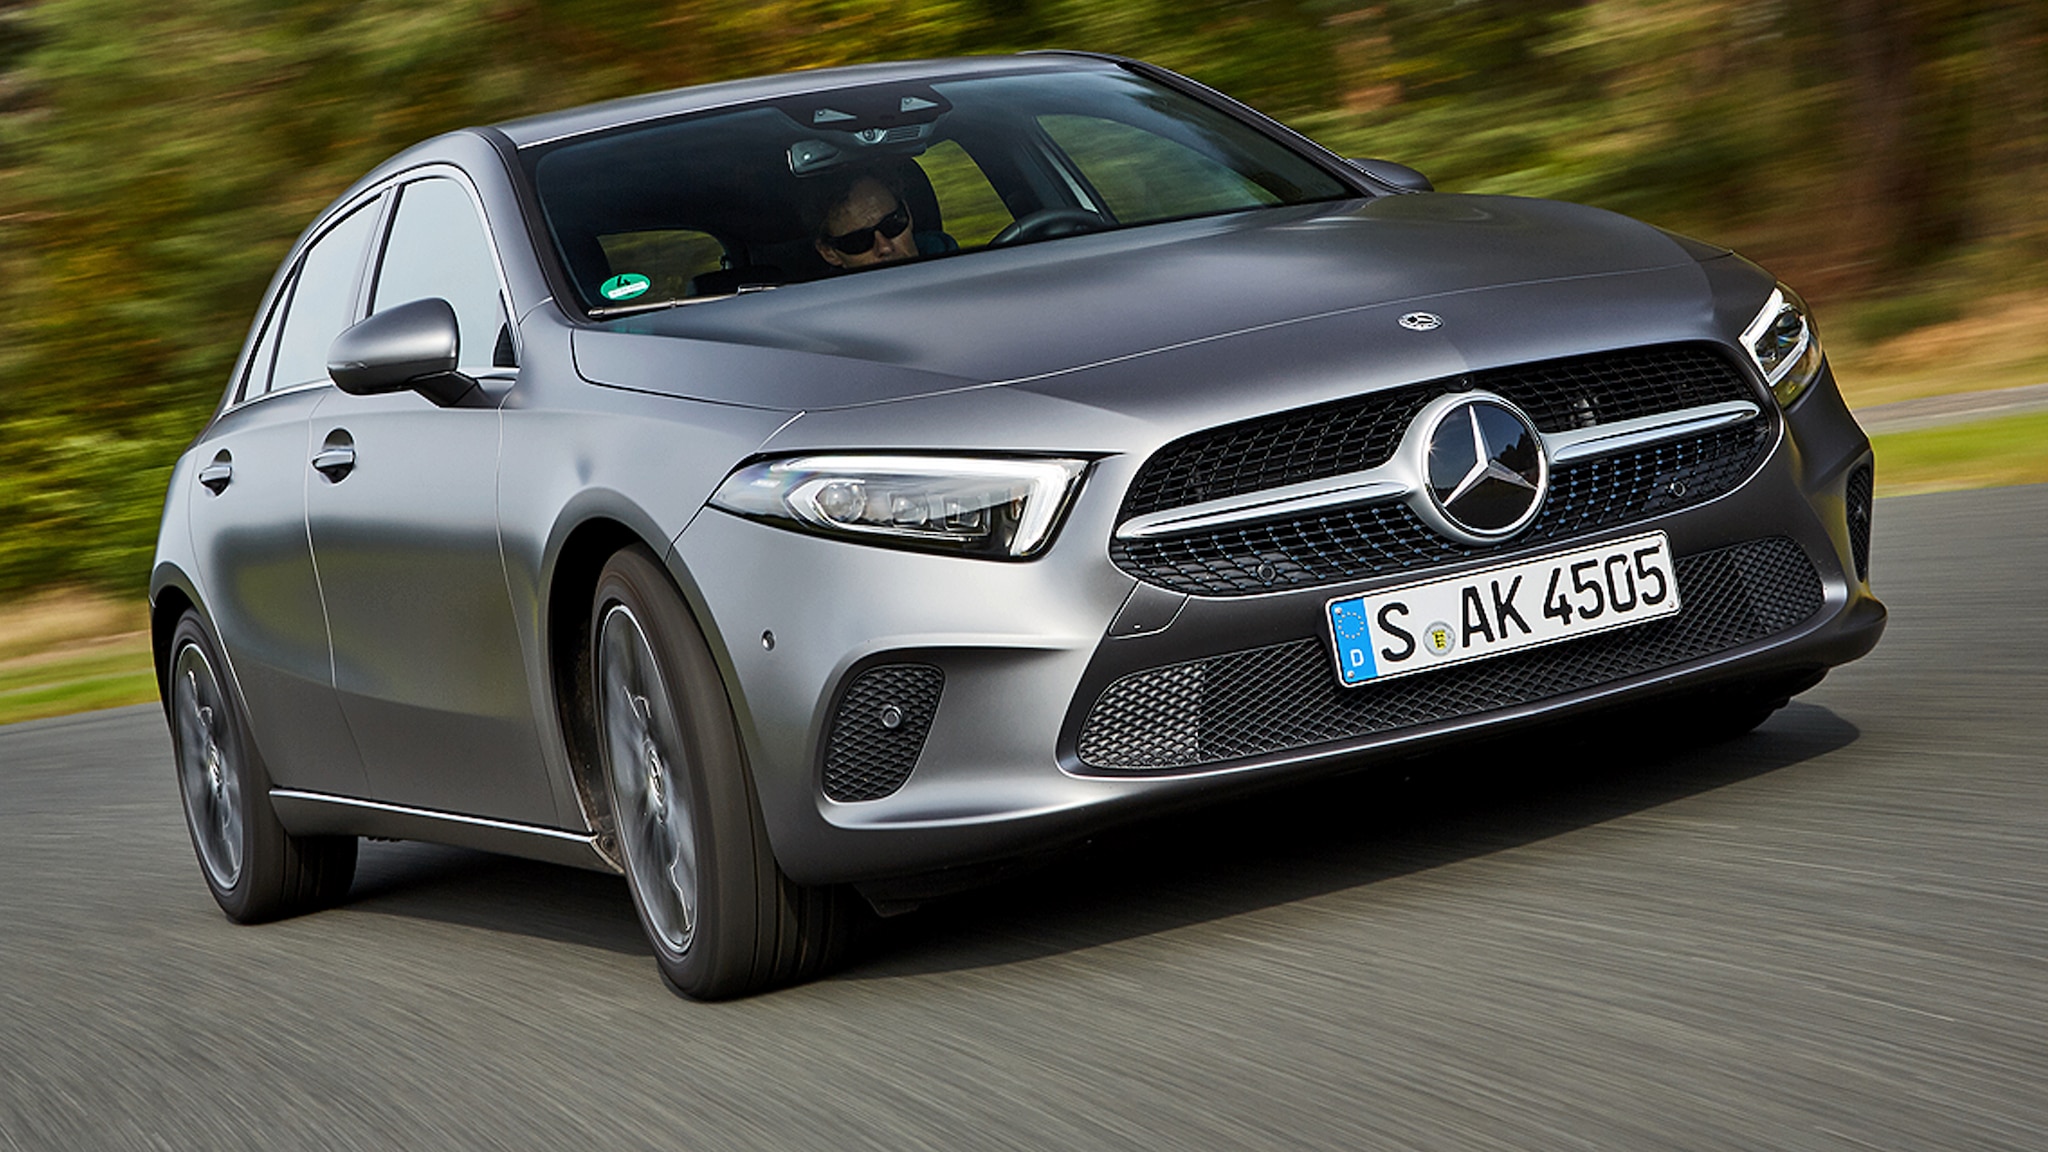 Ausblick auf die neue Mercedes A-Klasse: So viel Premium steckt im